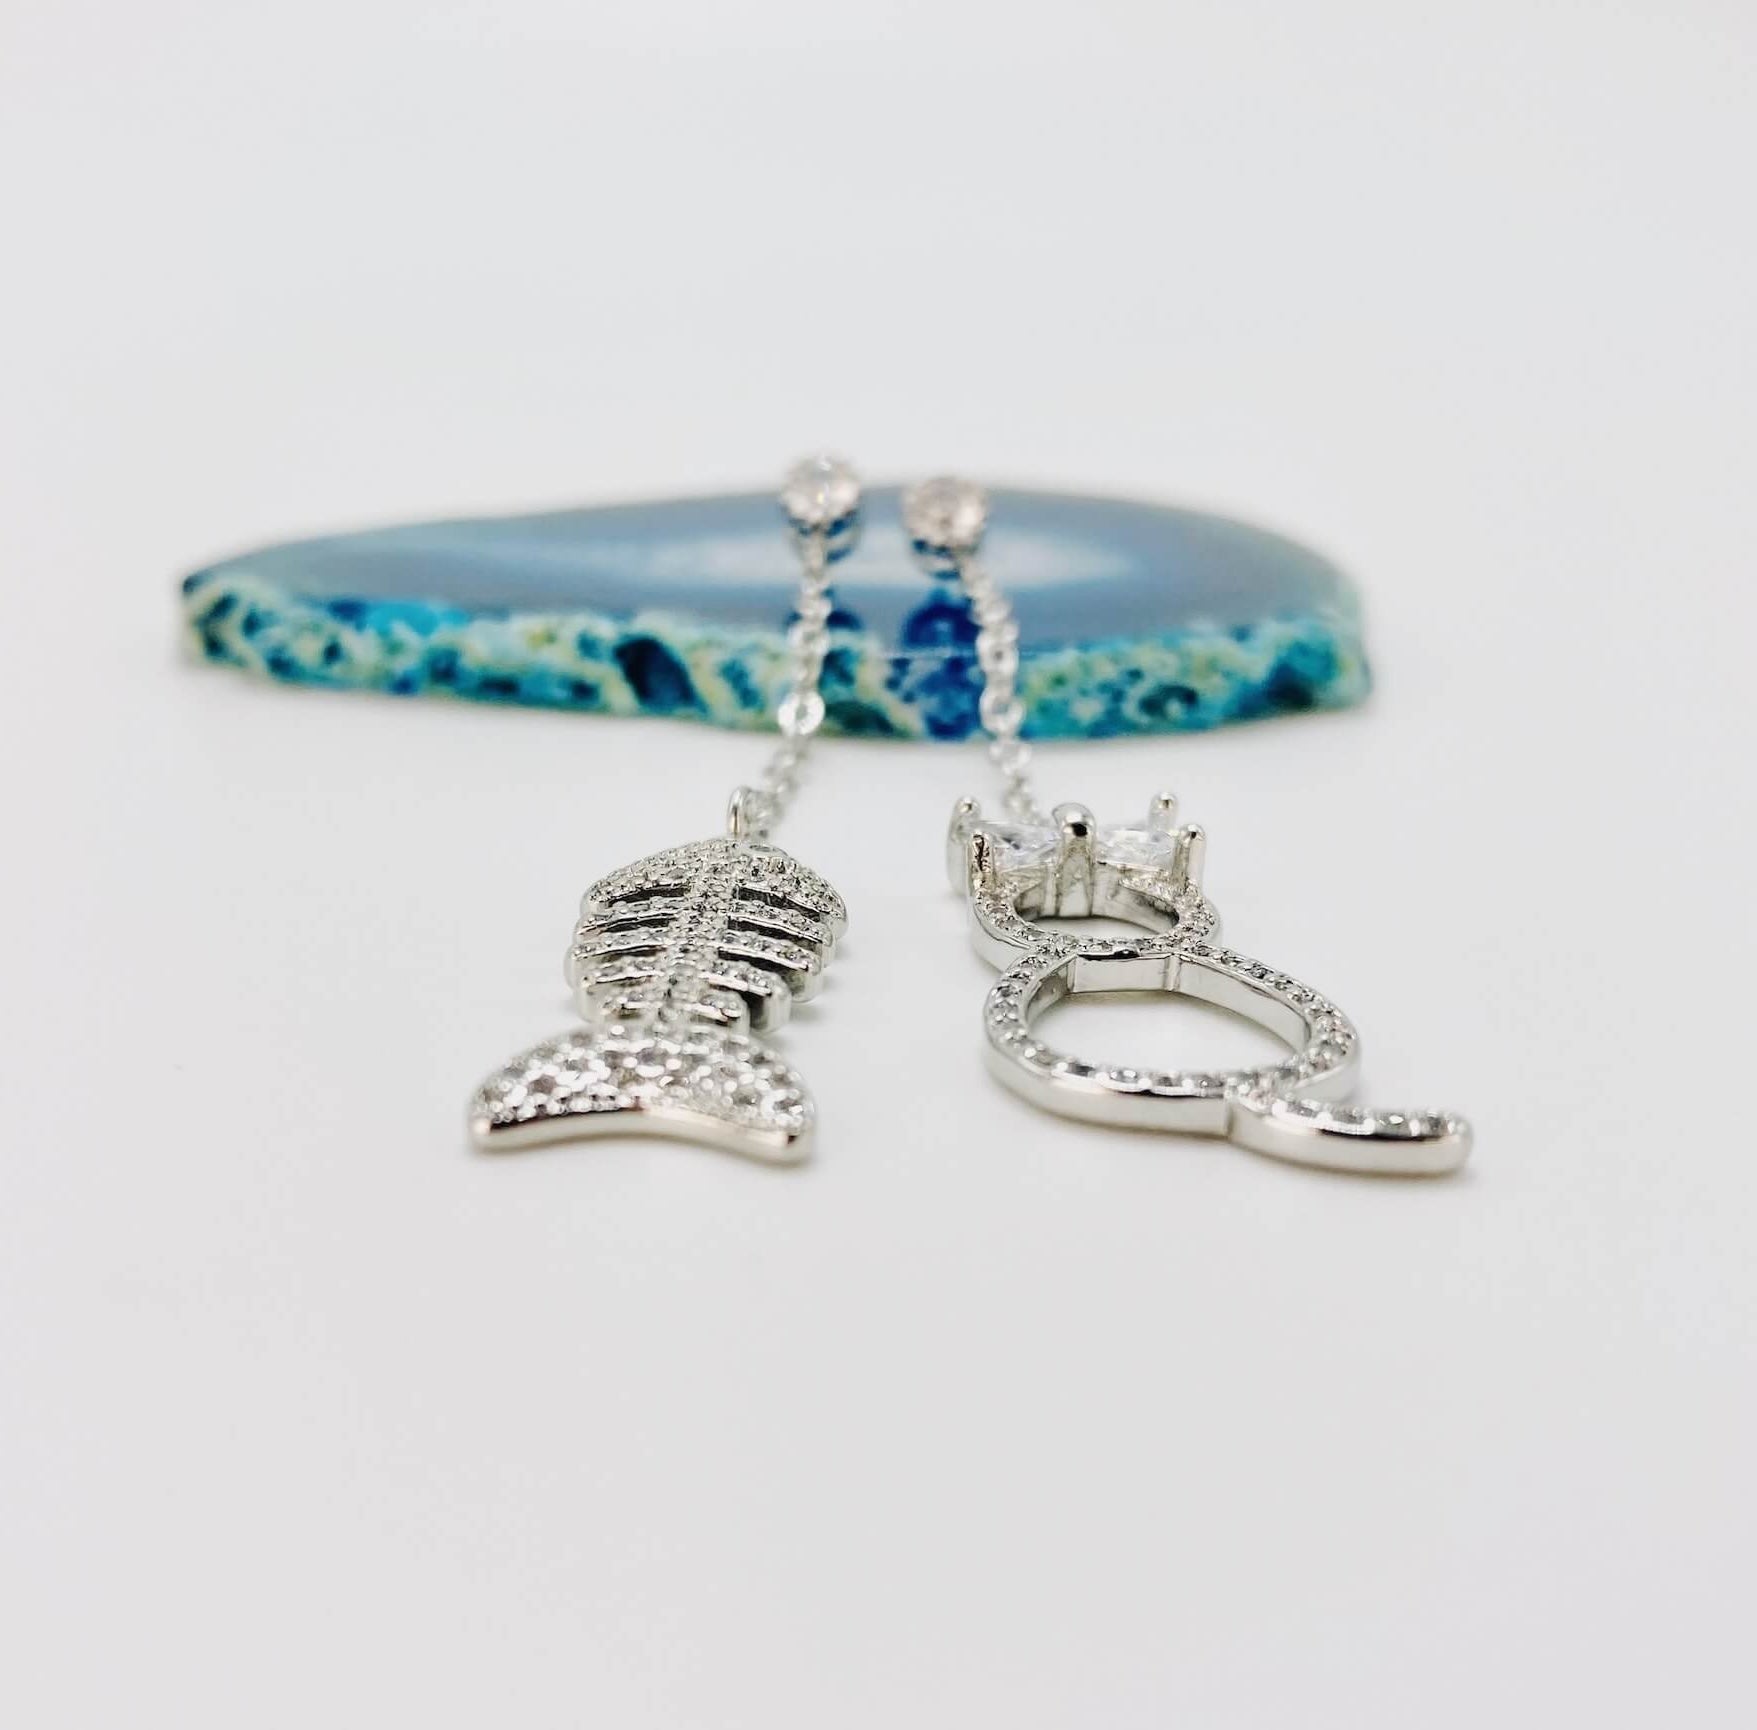 Cat and fishbone rhinestone drop earrings resting on blue agate stone.